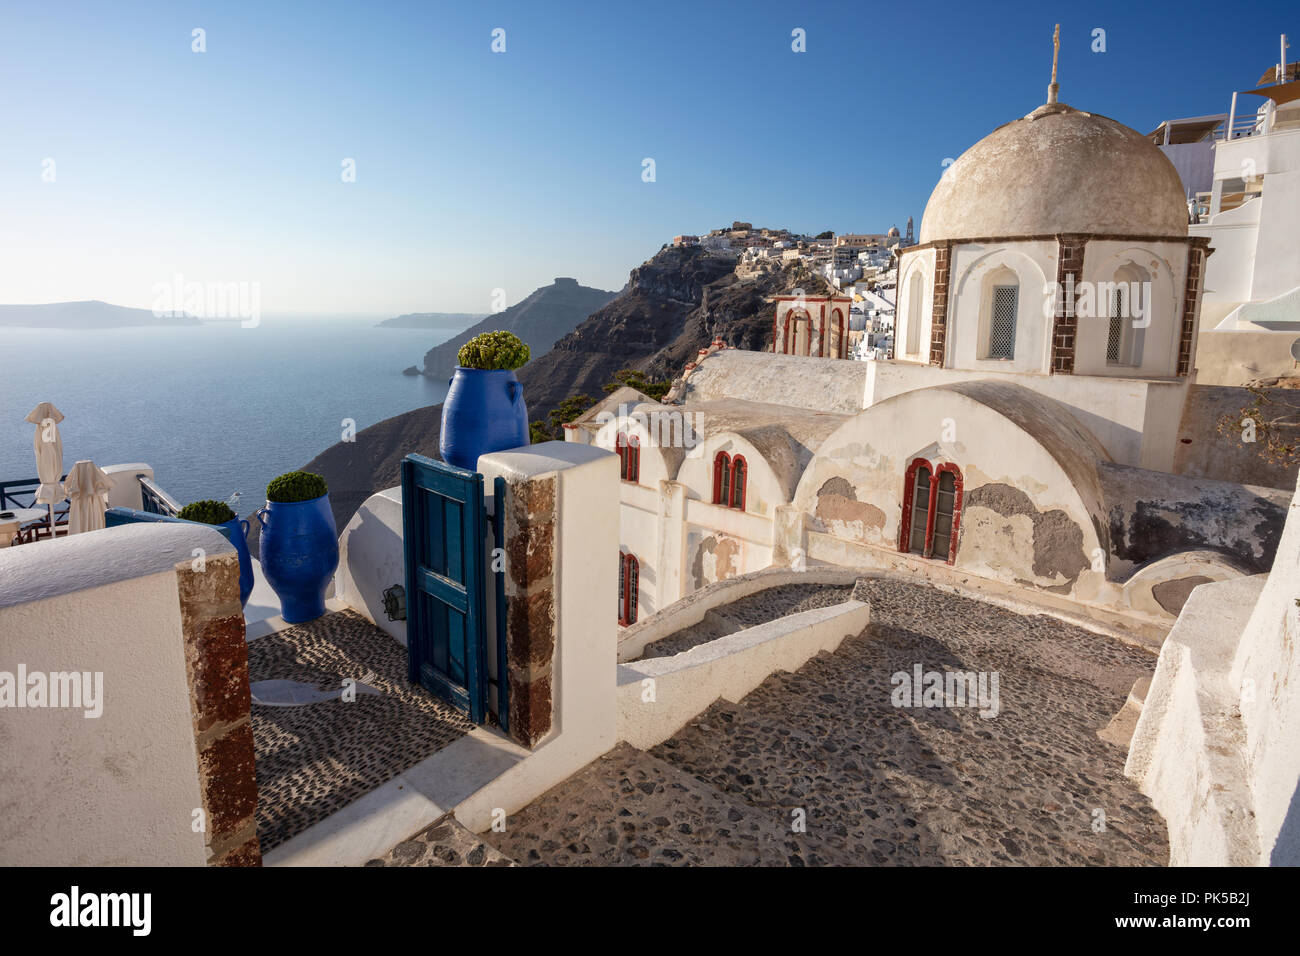 Thira, Santorini. Immagine del famoso villaggio Thira situato in corrispondenza di una delle Cicladi isola di Santorini, Egeo Meridionale, Grecia. Foto Stock